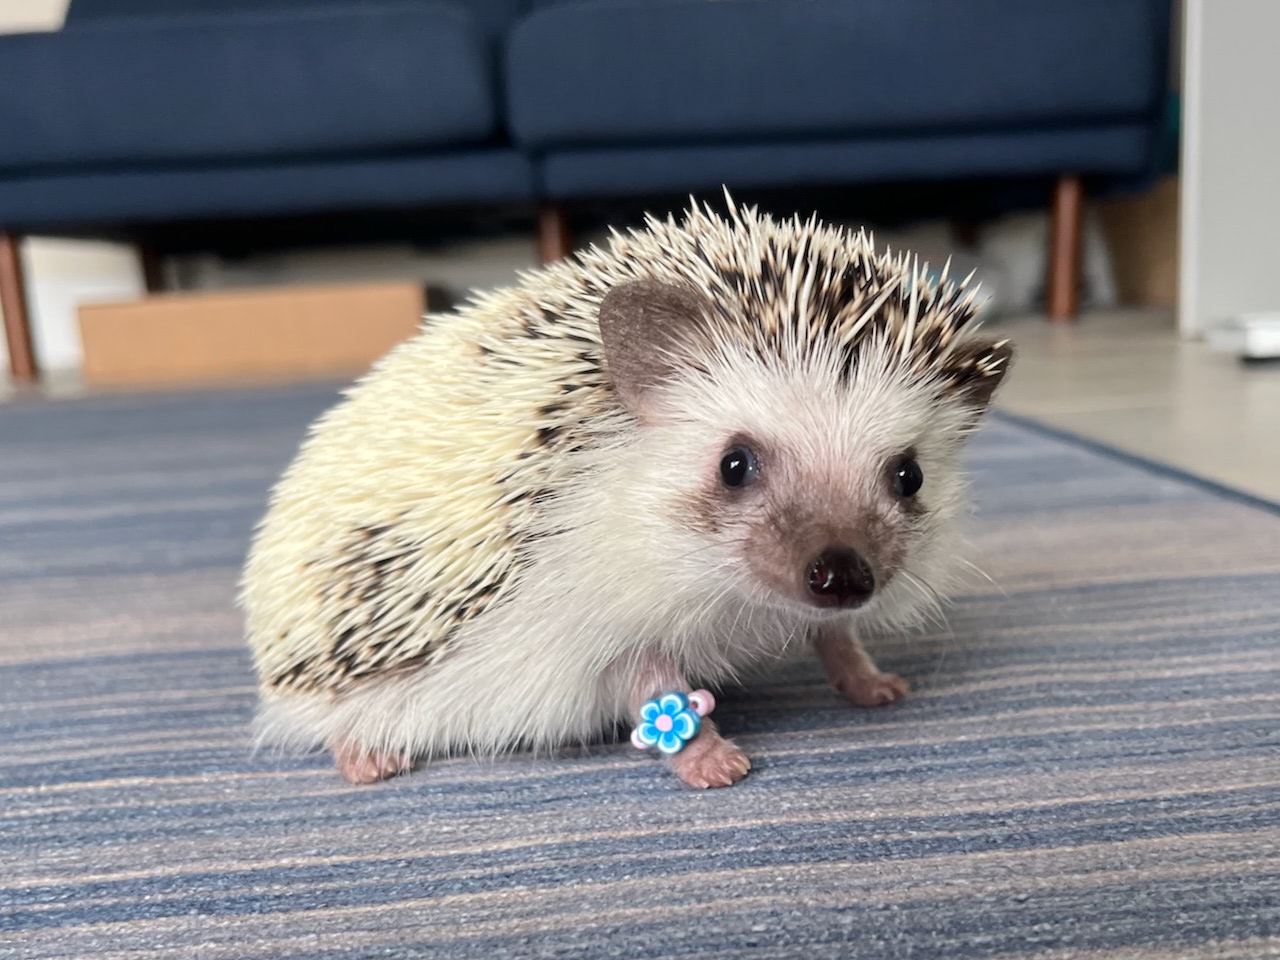 A pygmy hedgehog wearing a tiny friendship bracelet